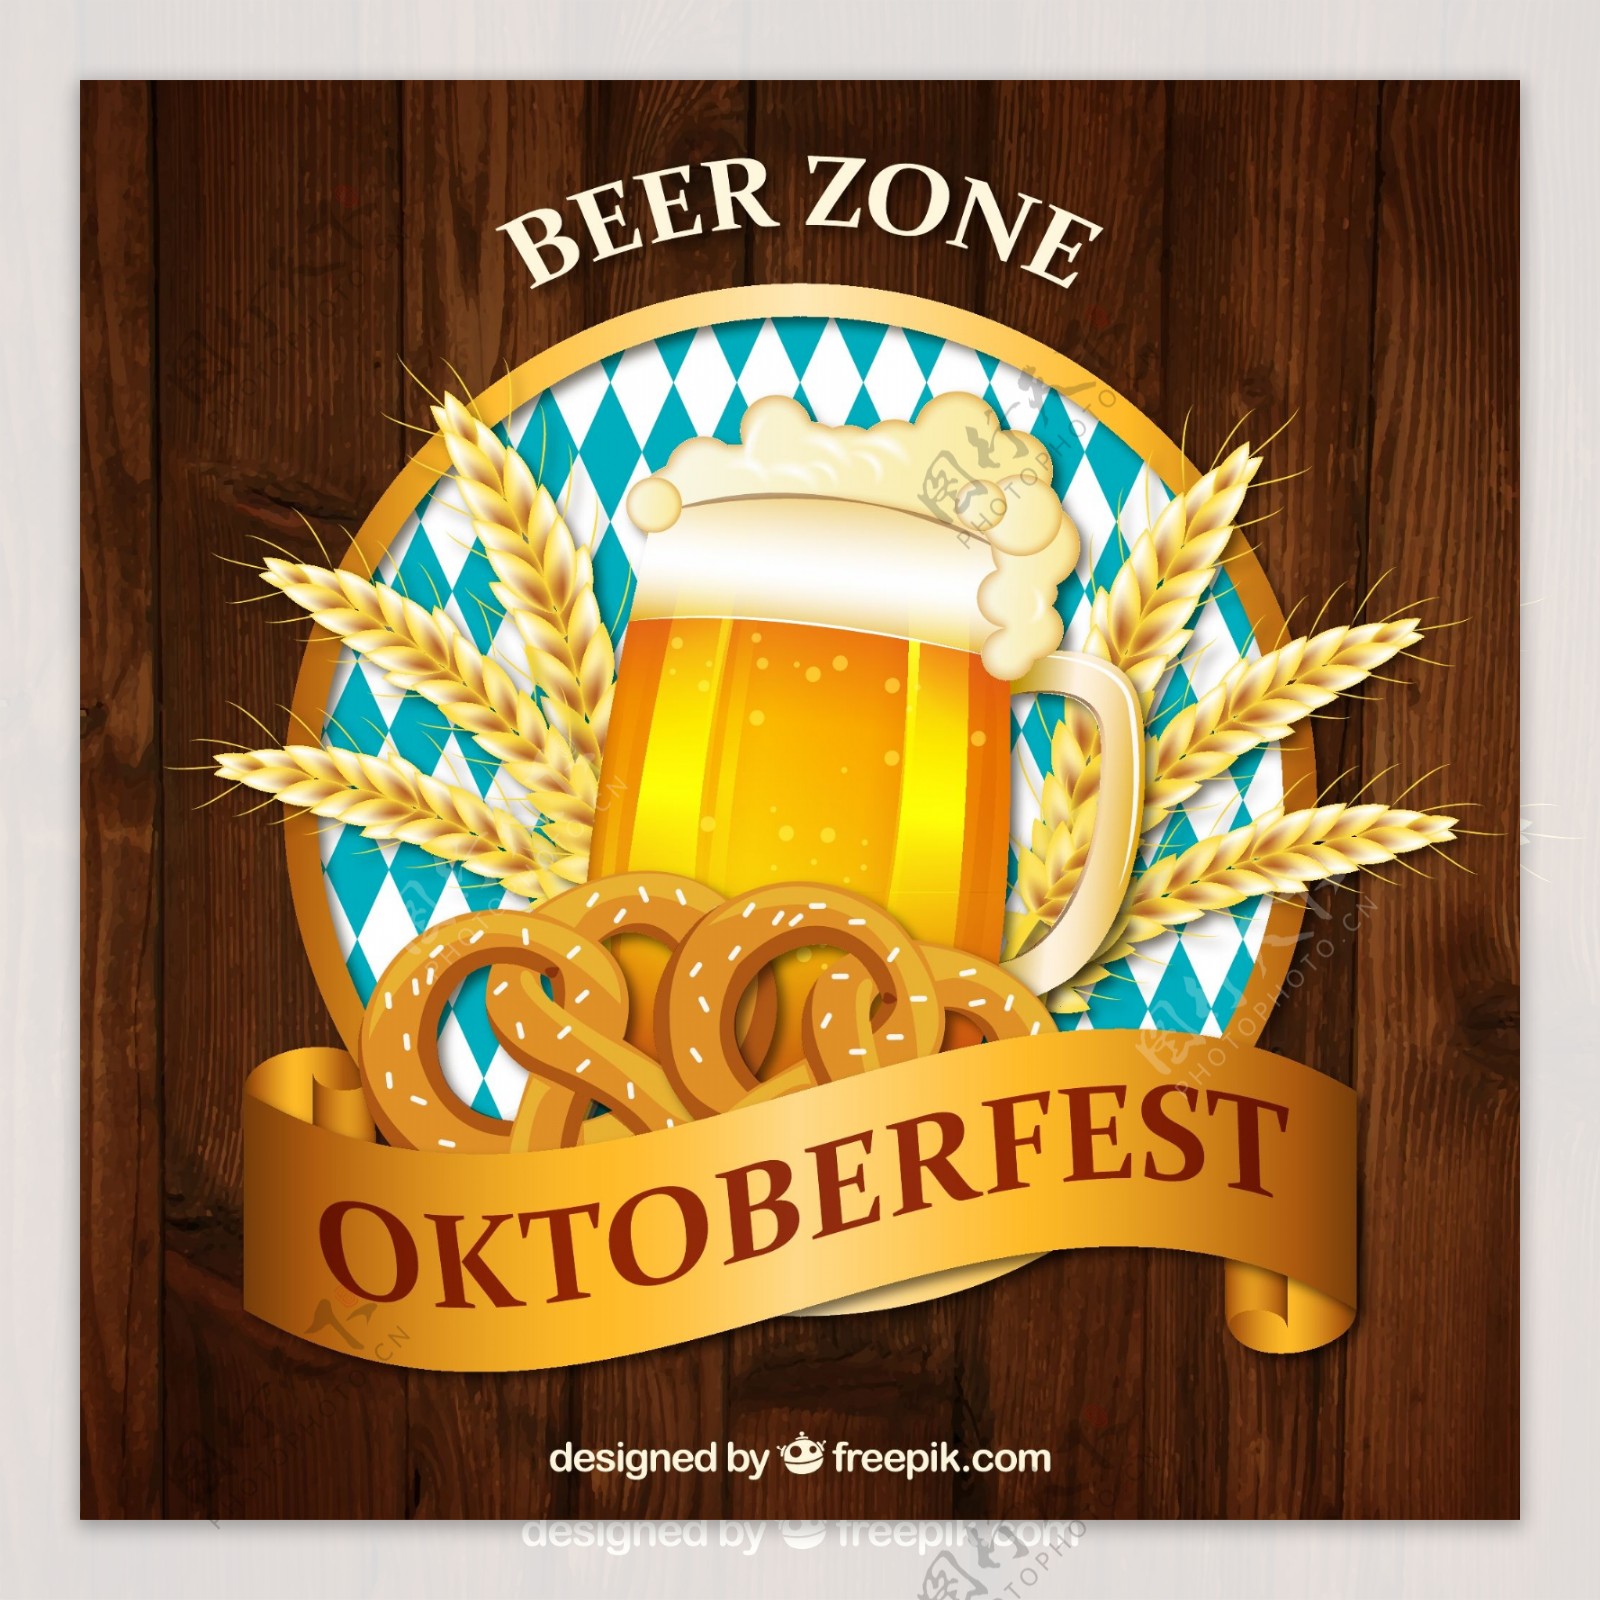 创意慕尼黑啤酒节啤酒标签矢量素材